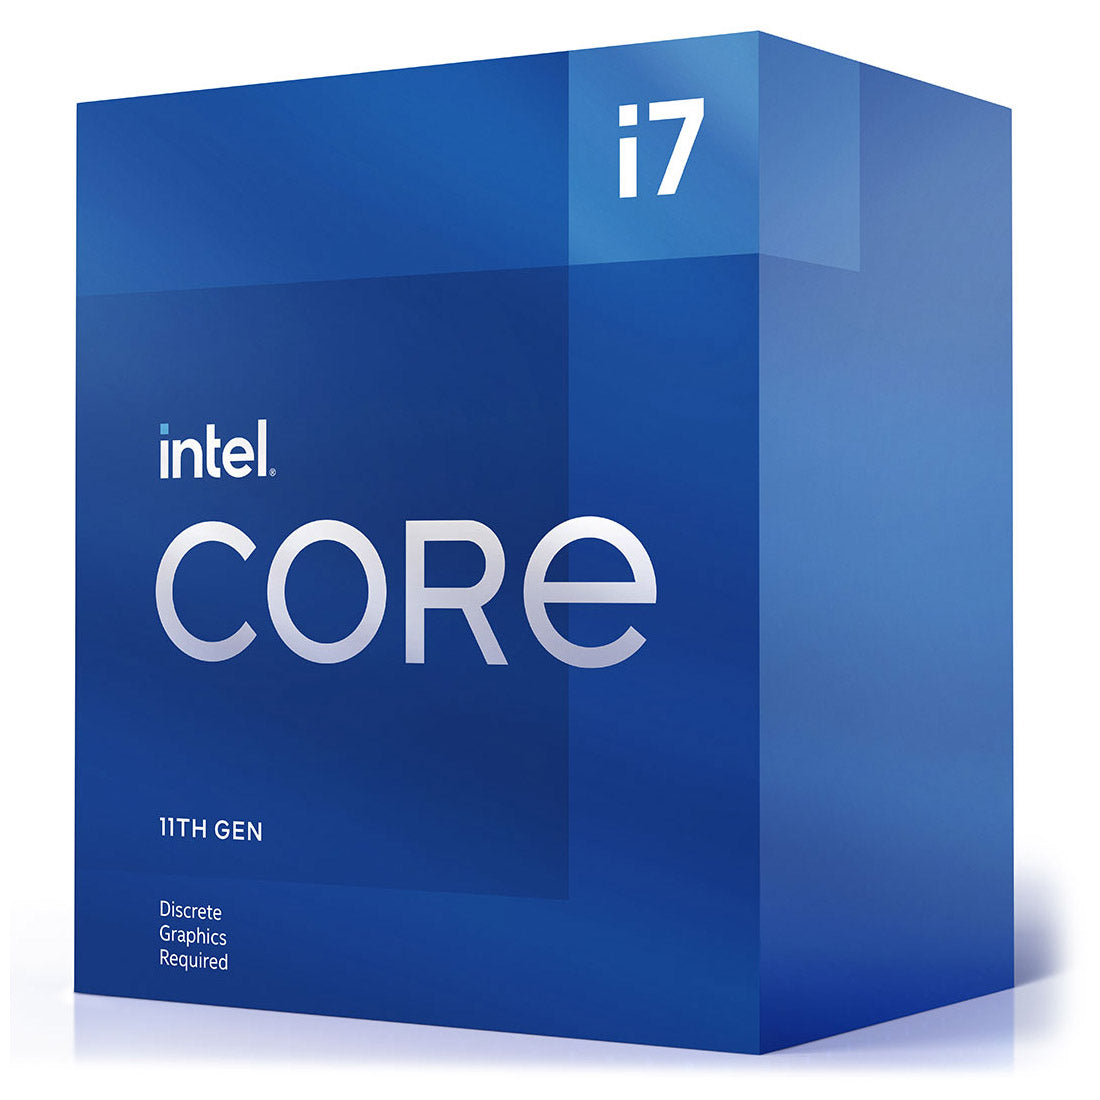 Intel Core 11th Gen i7-11700F LGA1200 Desktop Processor 8 Cores up to  4.9GHz 16MB Cache